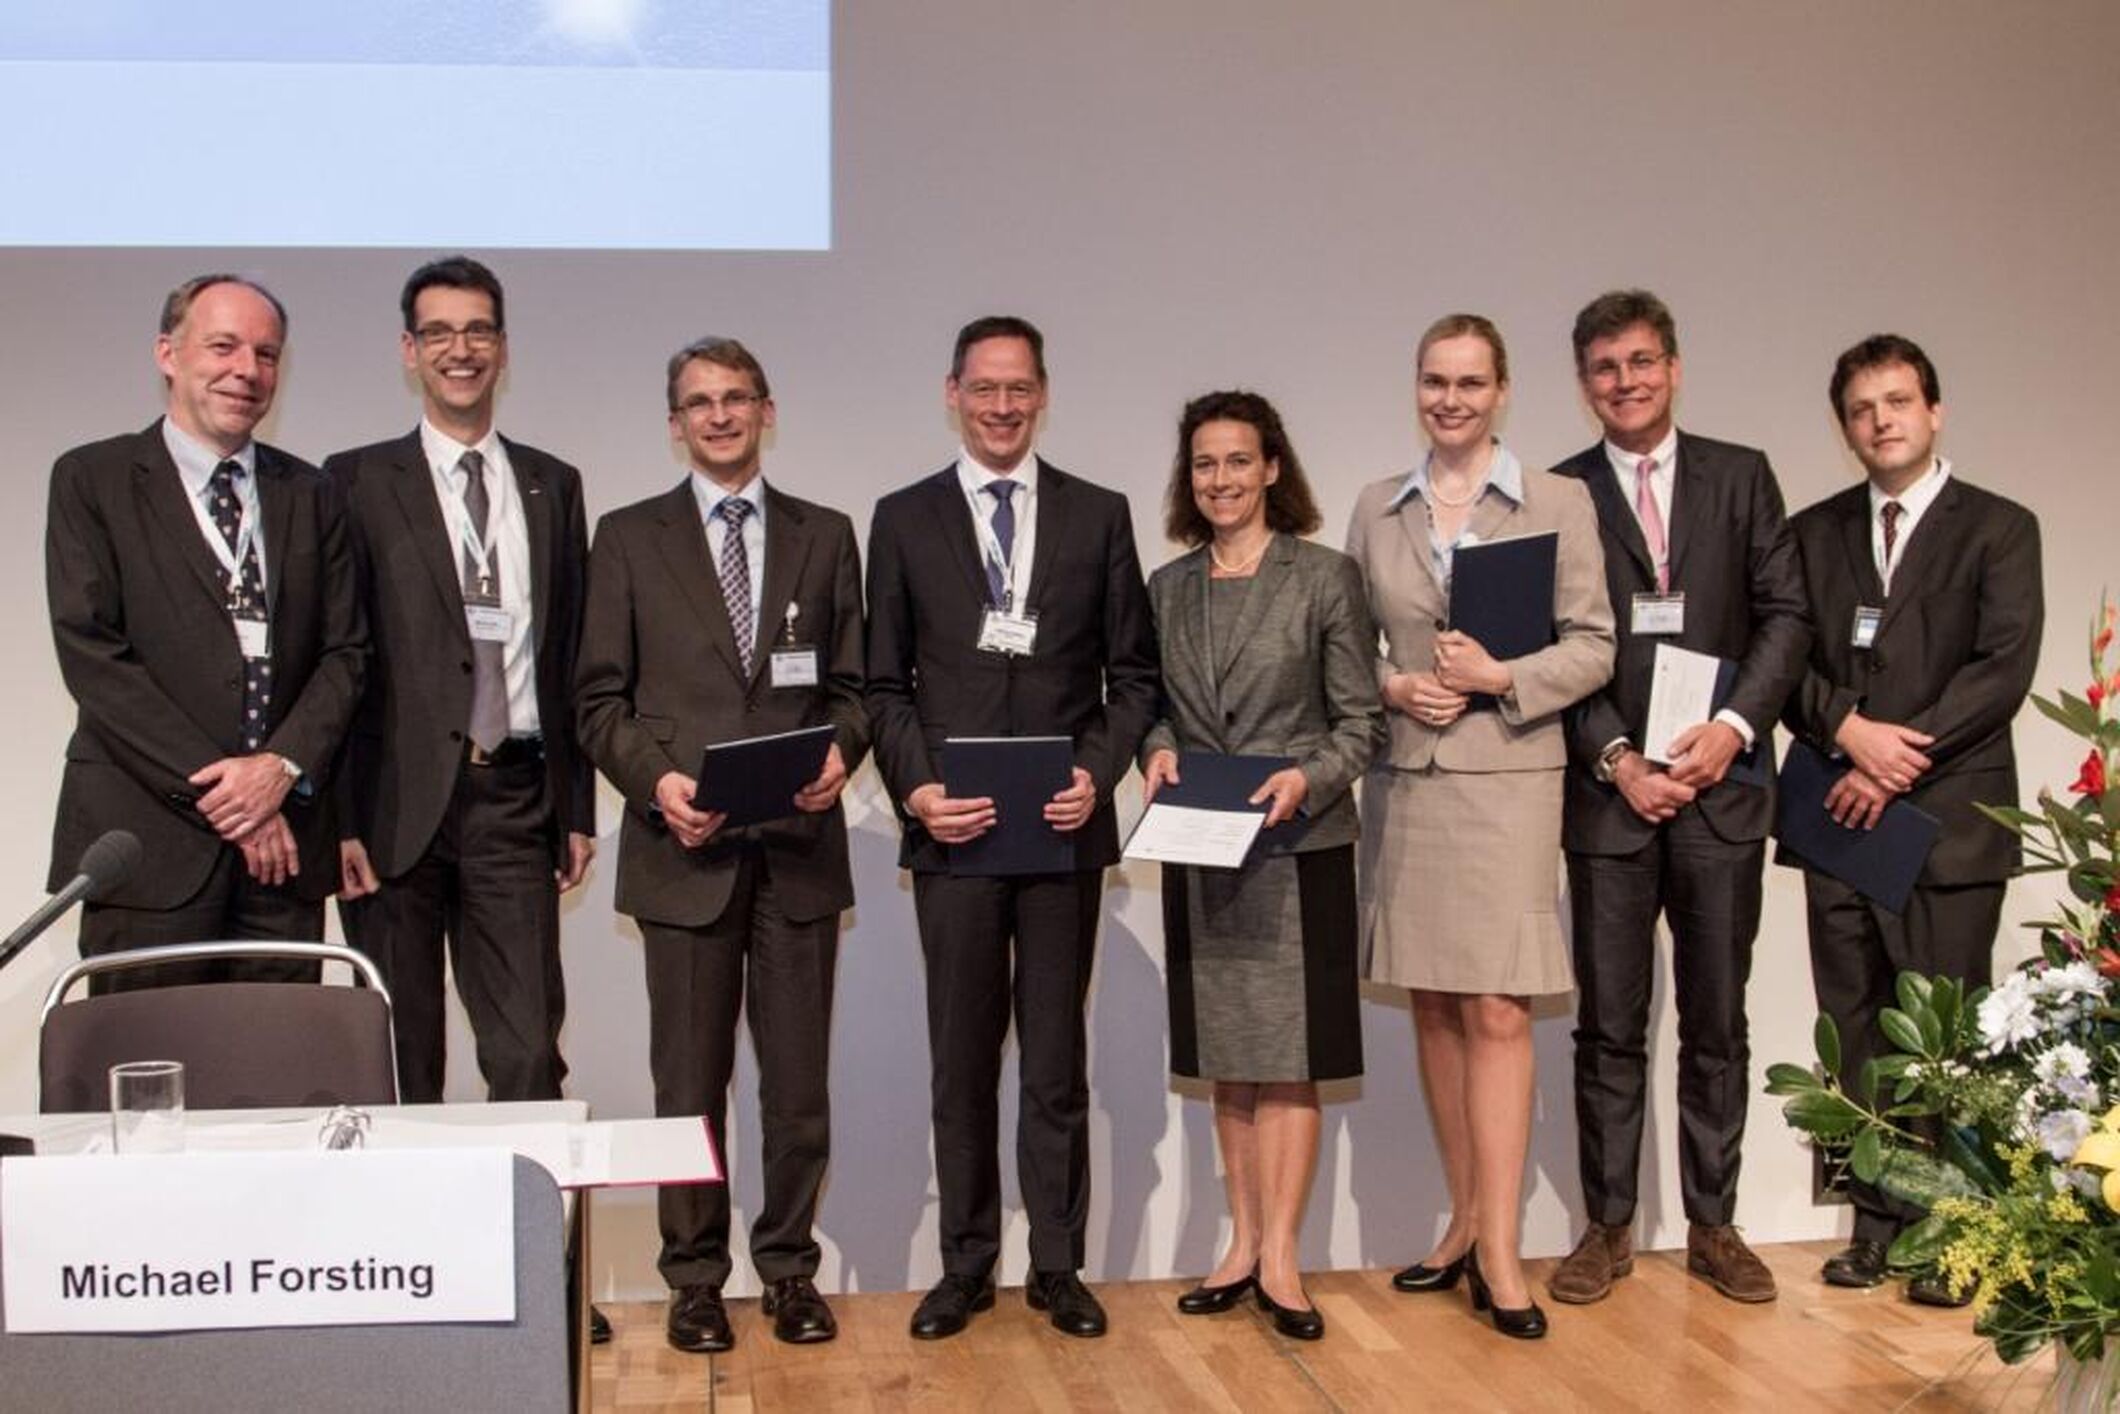 Von links nach rechts: M. Forsting, M. Uder, J. Lotz, J. Weßling, B. Madsack, B. Ertl-Wagner, G. Voshage, A. Malich